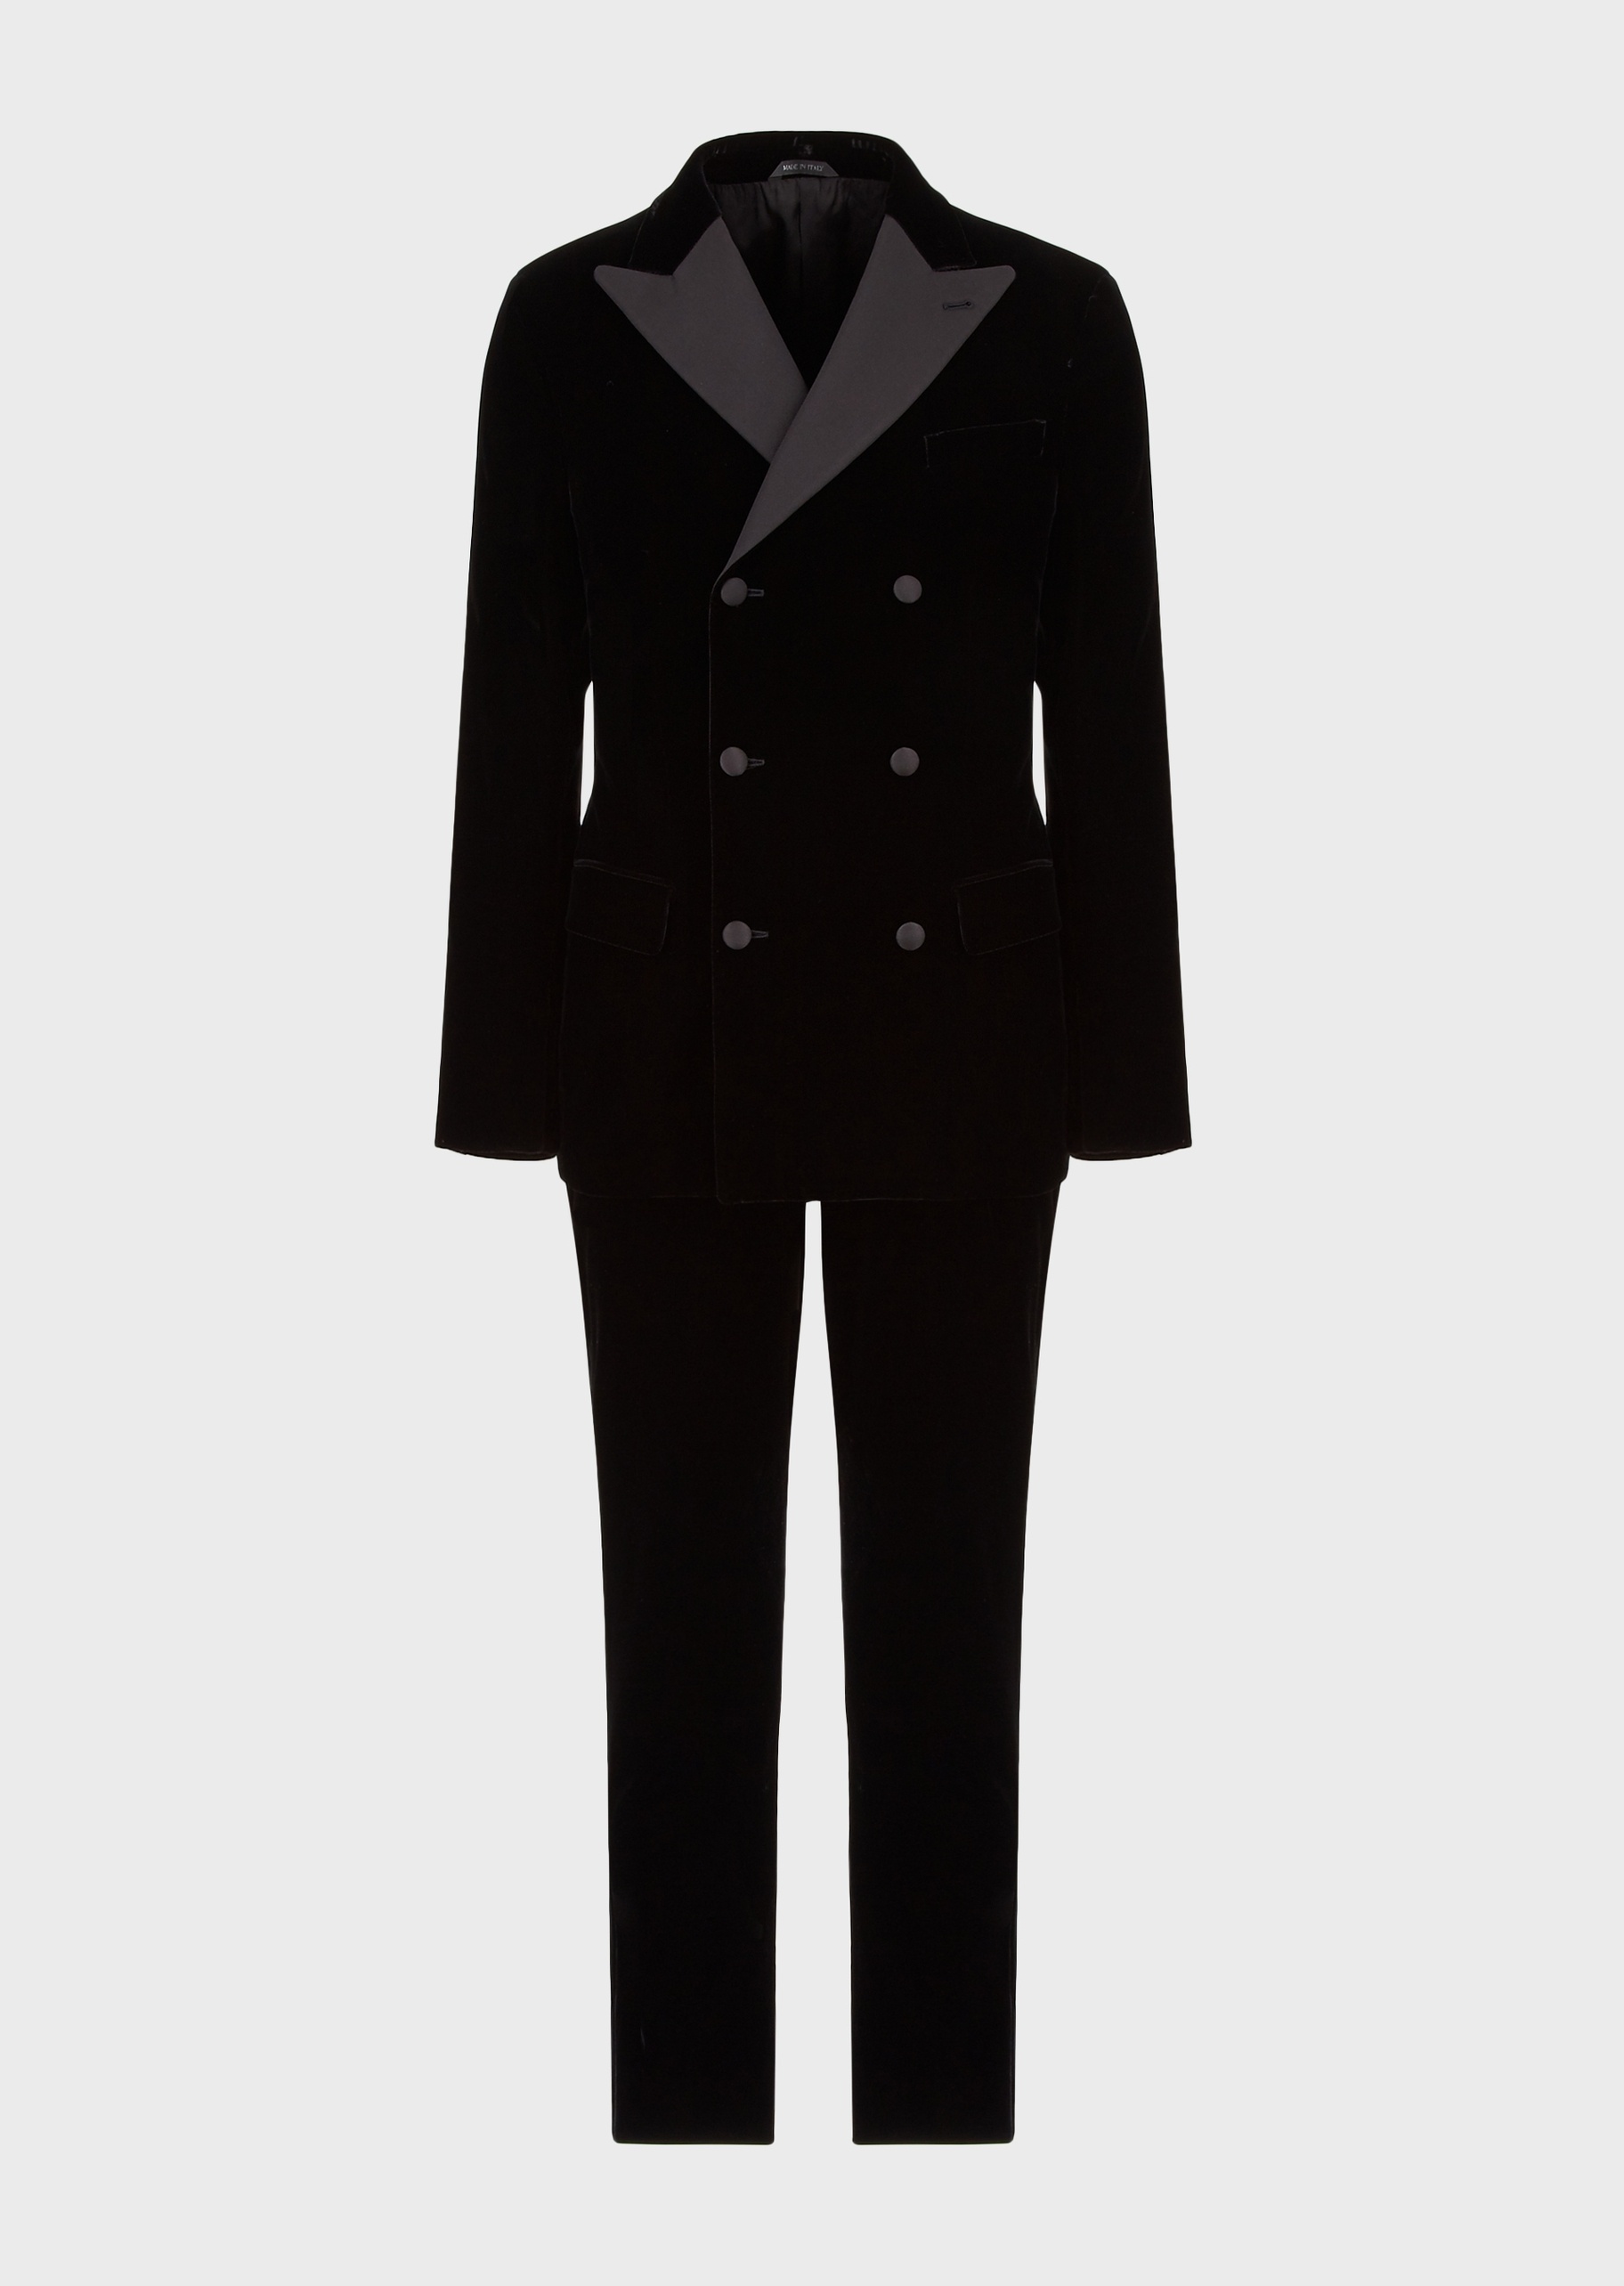 Giorgio Armani 男士休闲修身戗驳领双排扣西装套装